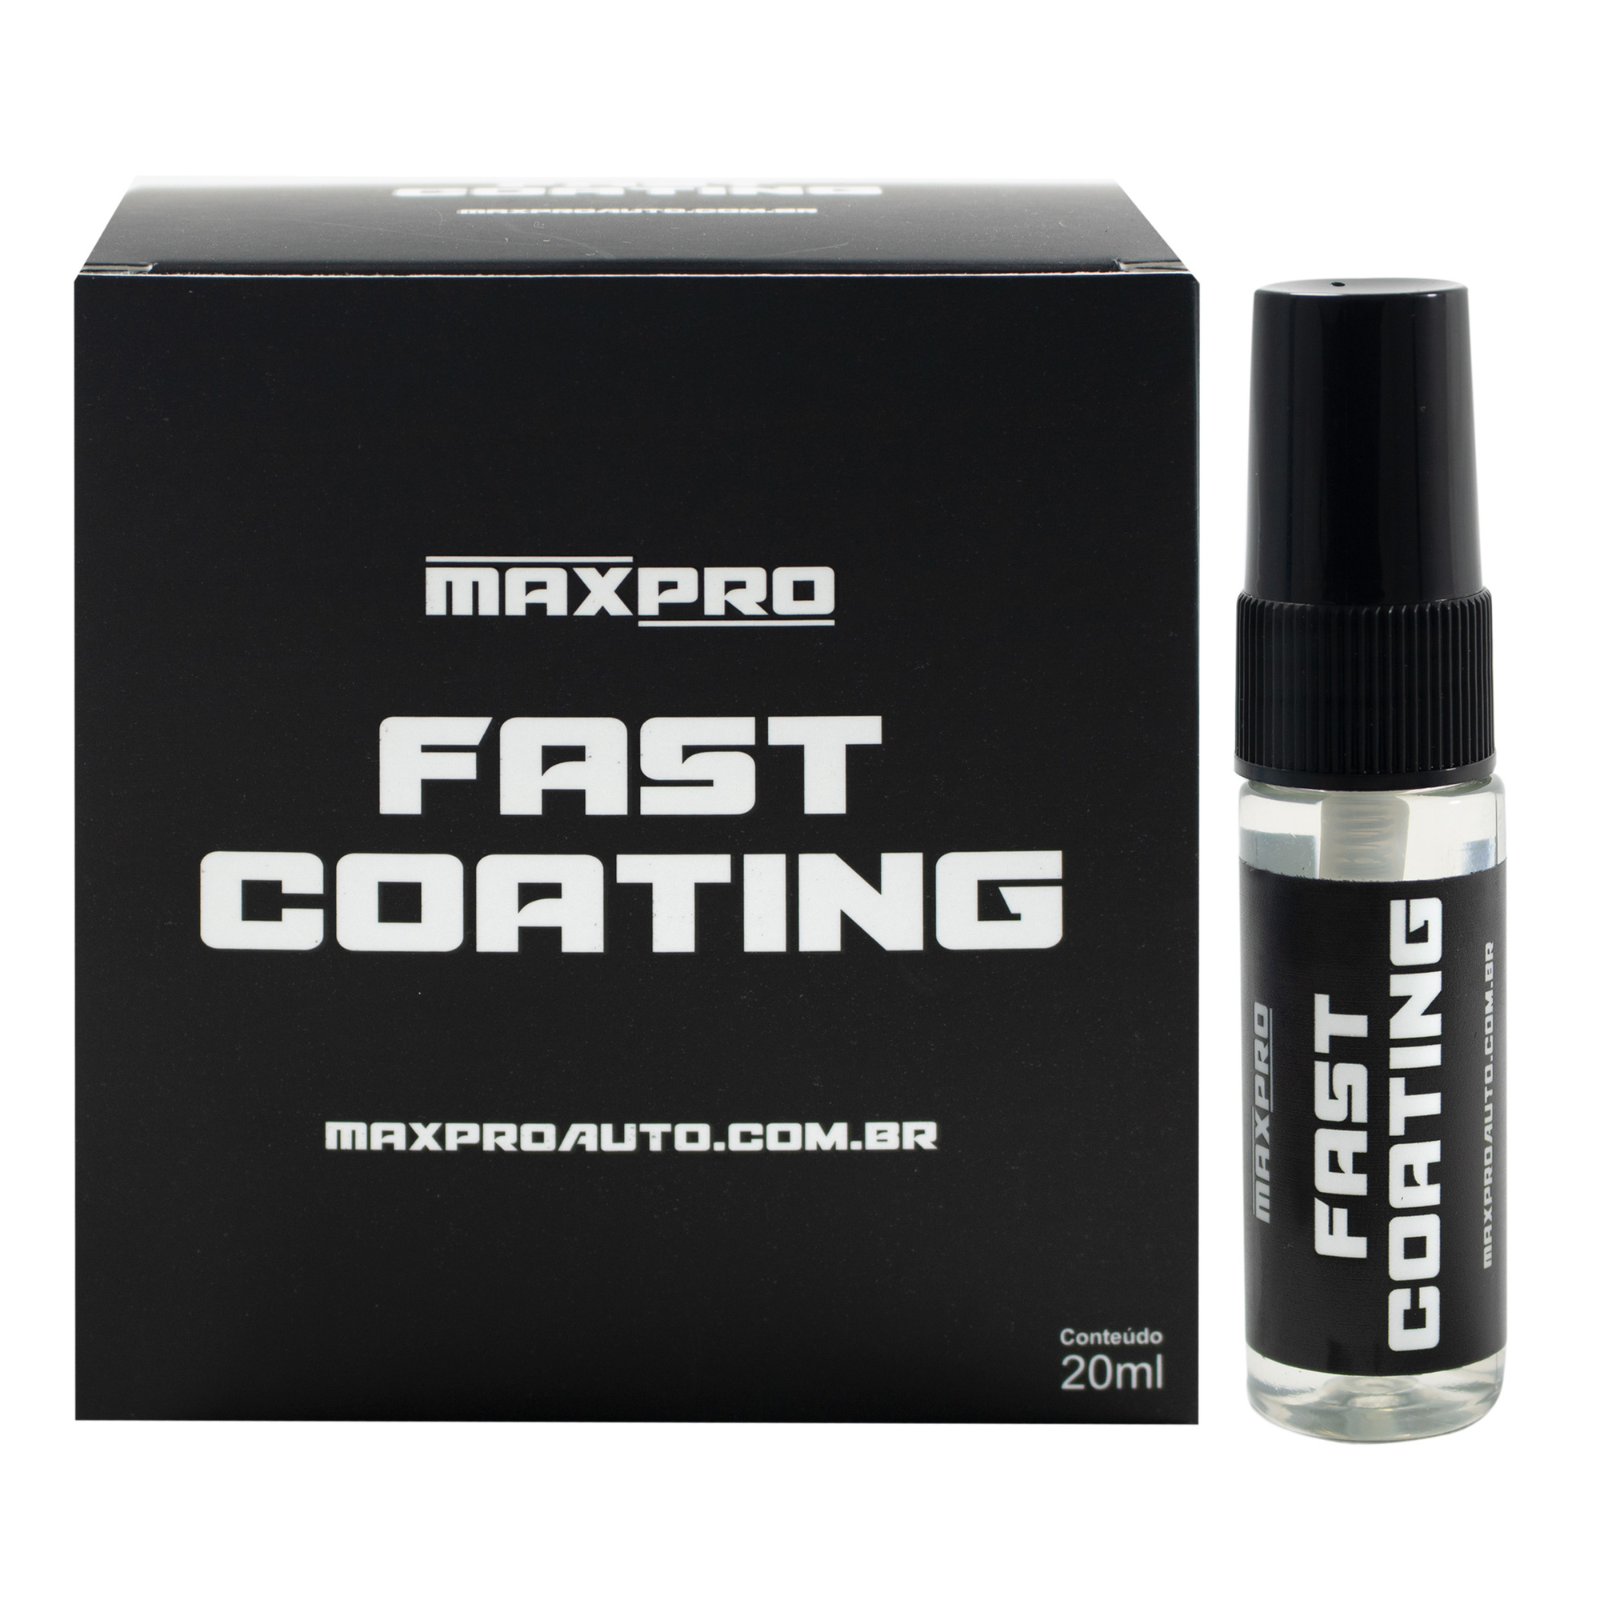 Fast Coating - MaxPro